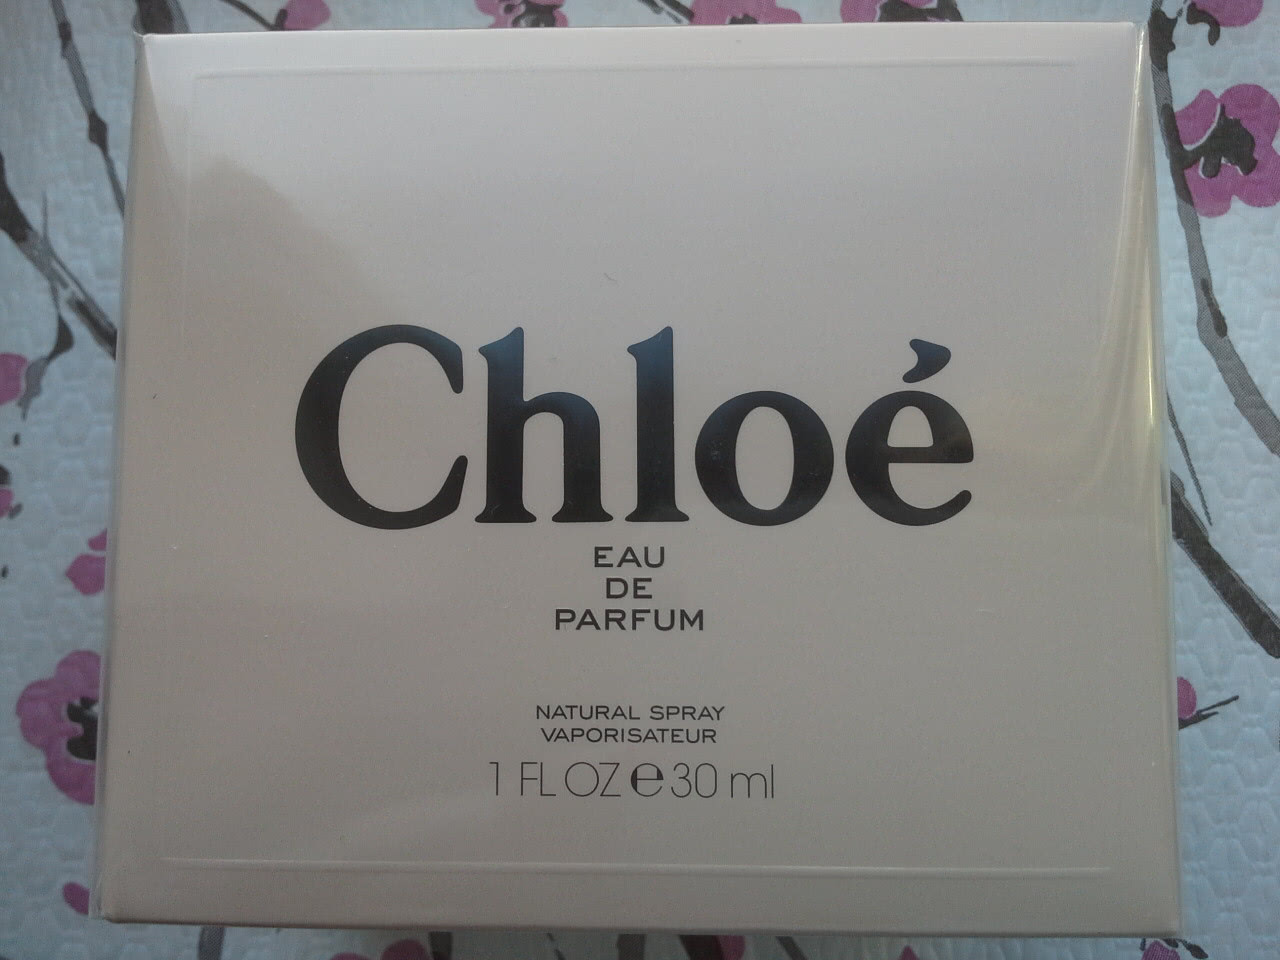 Chloé Eau de parfum 30ml